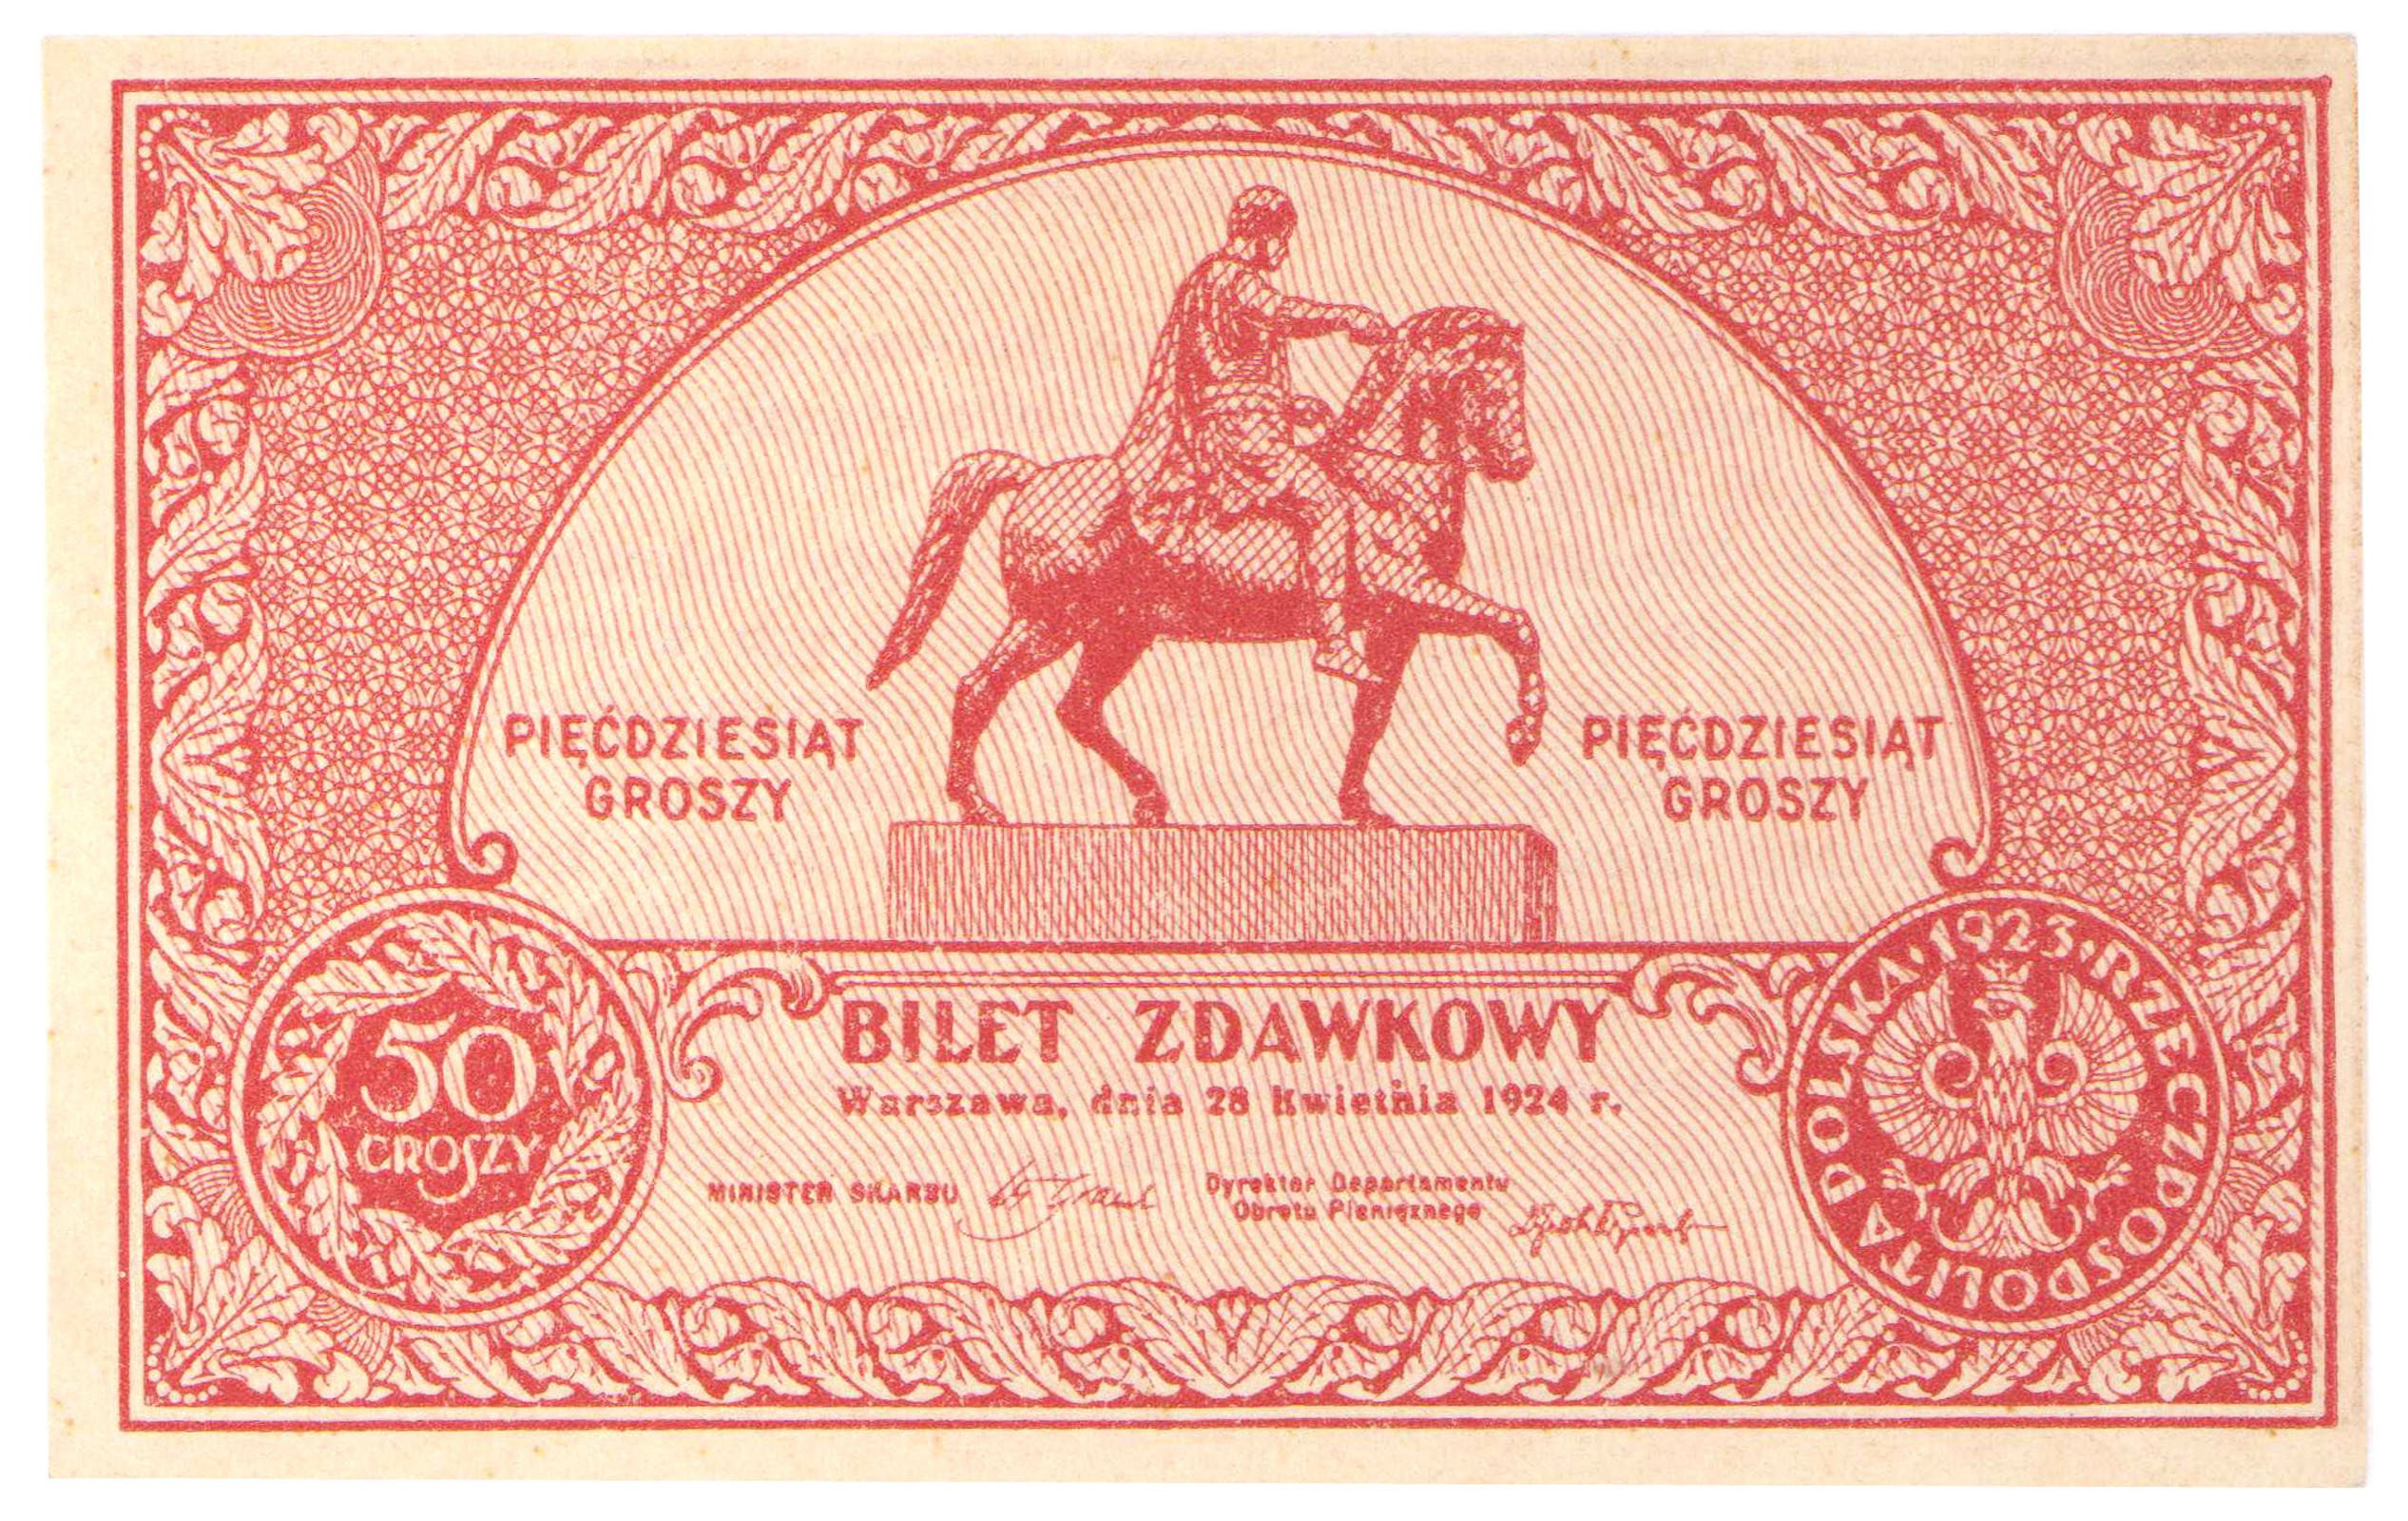 Bilet zdawkowy. 50 groszy 1924 - PIĘKNE